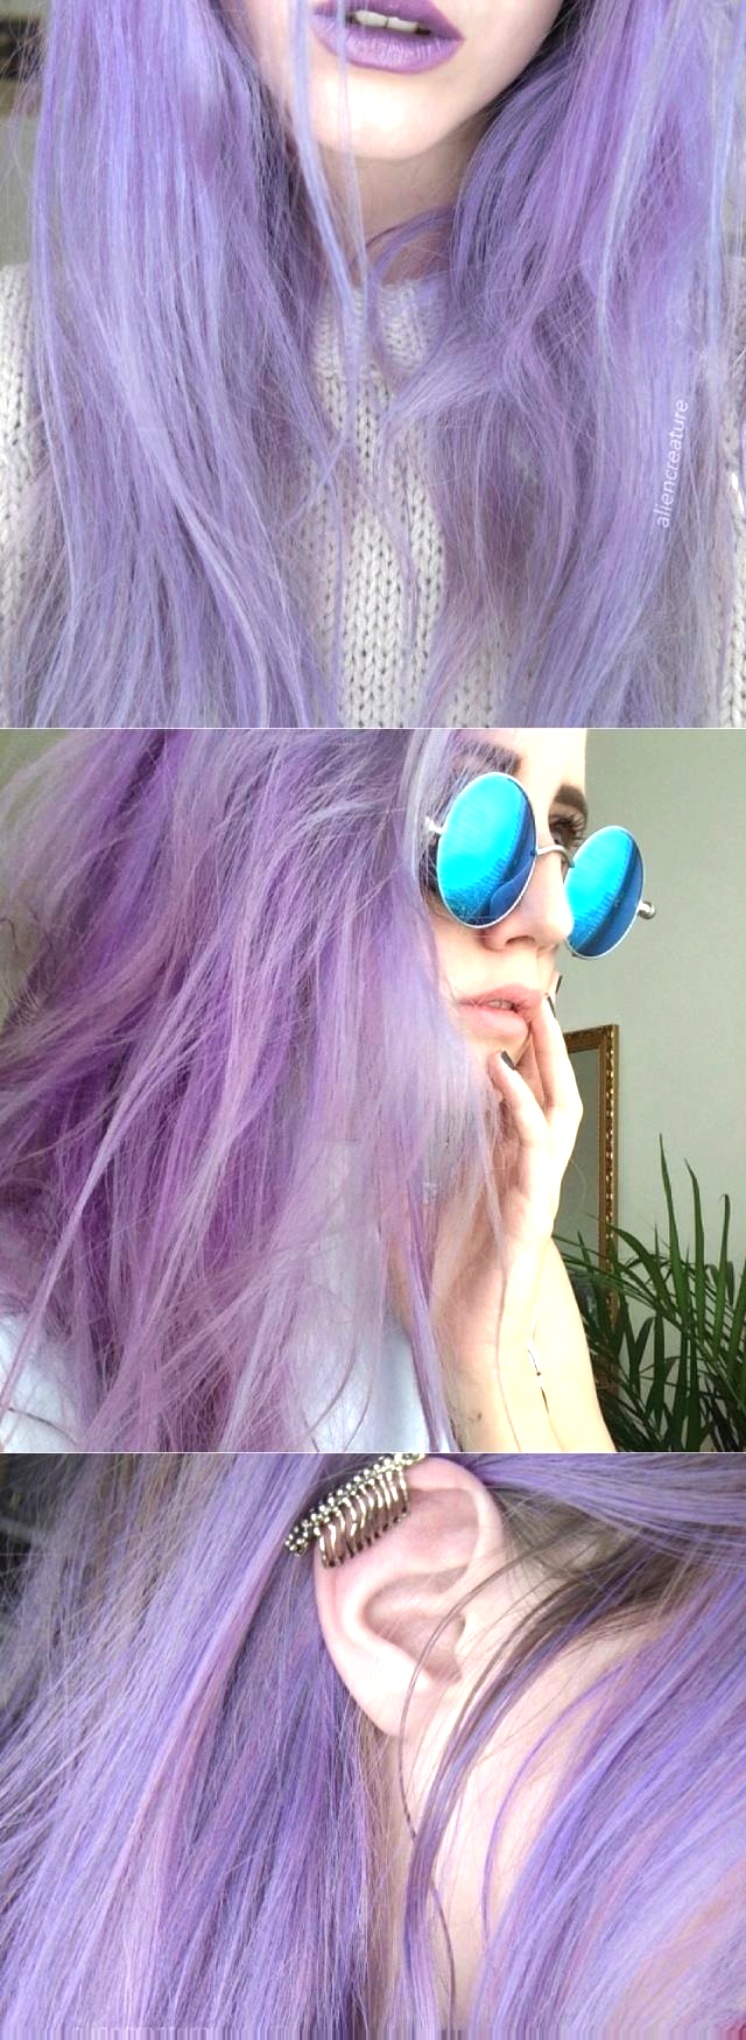 好喜欢这款紫色的发型啊,可是不敢染